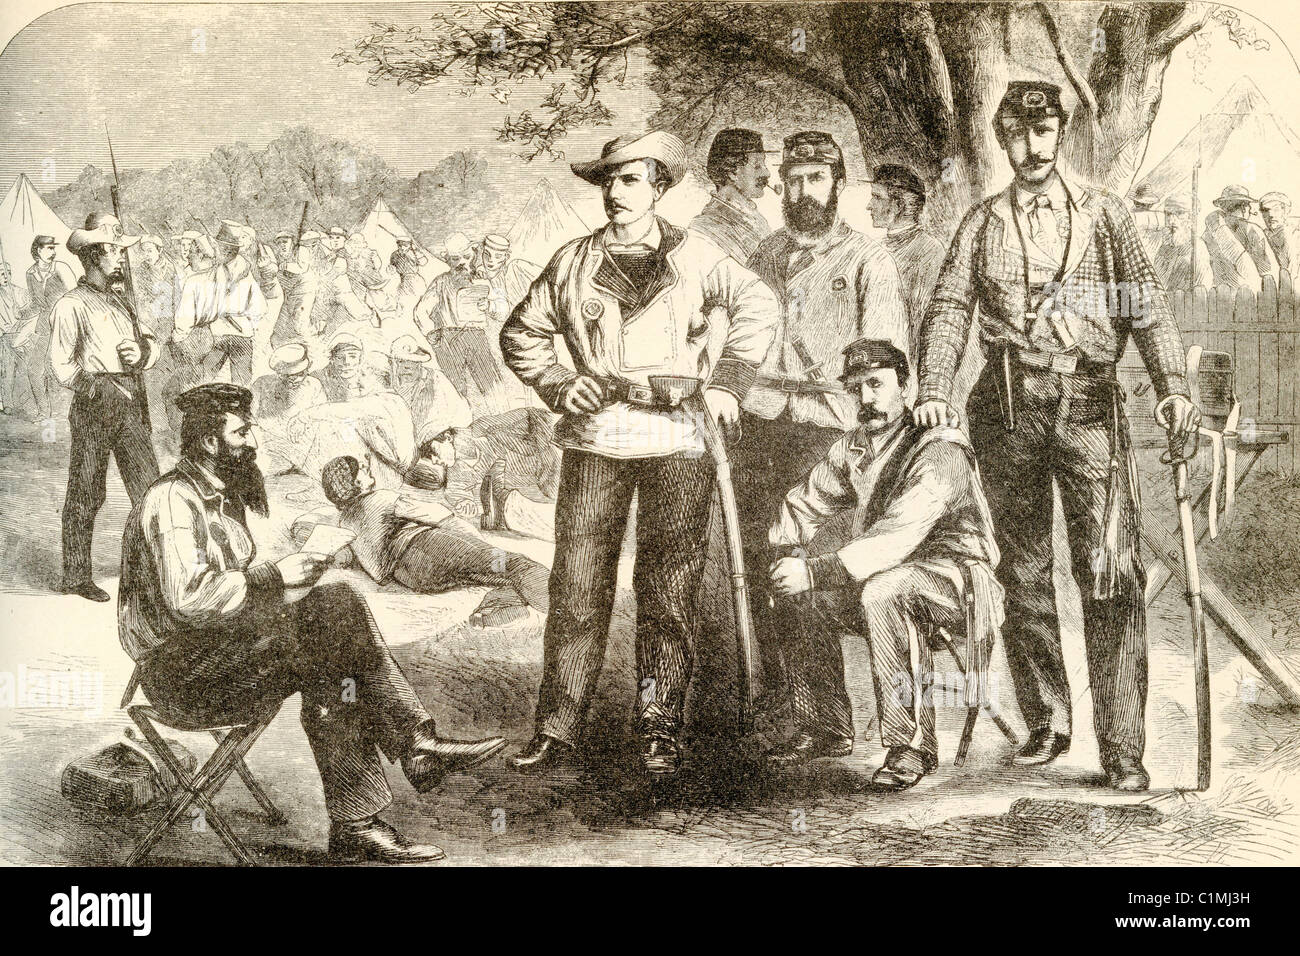 Alte Lithographie von Soldaten des amerikanischen Bürgerkriegs Stockfoto